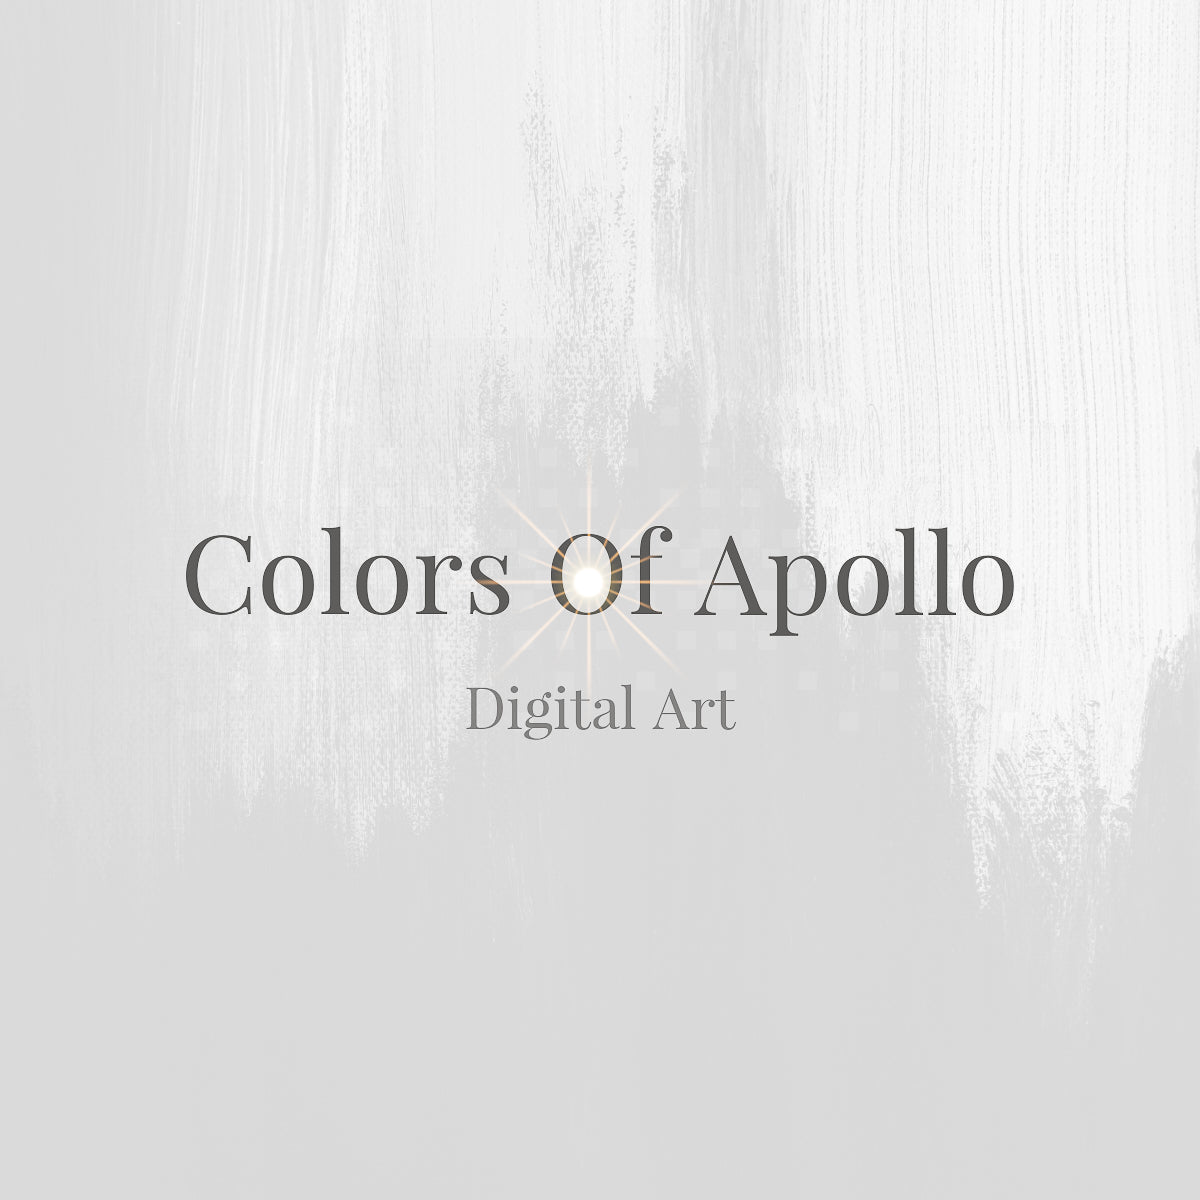 Colors of Apollo